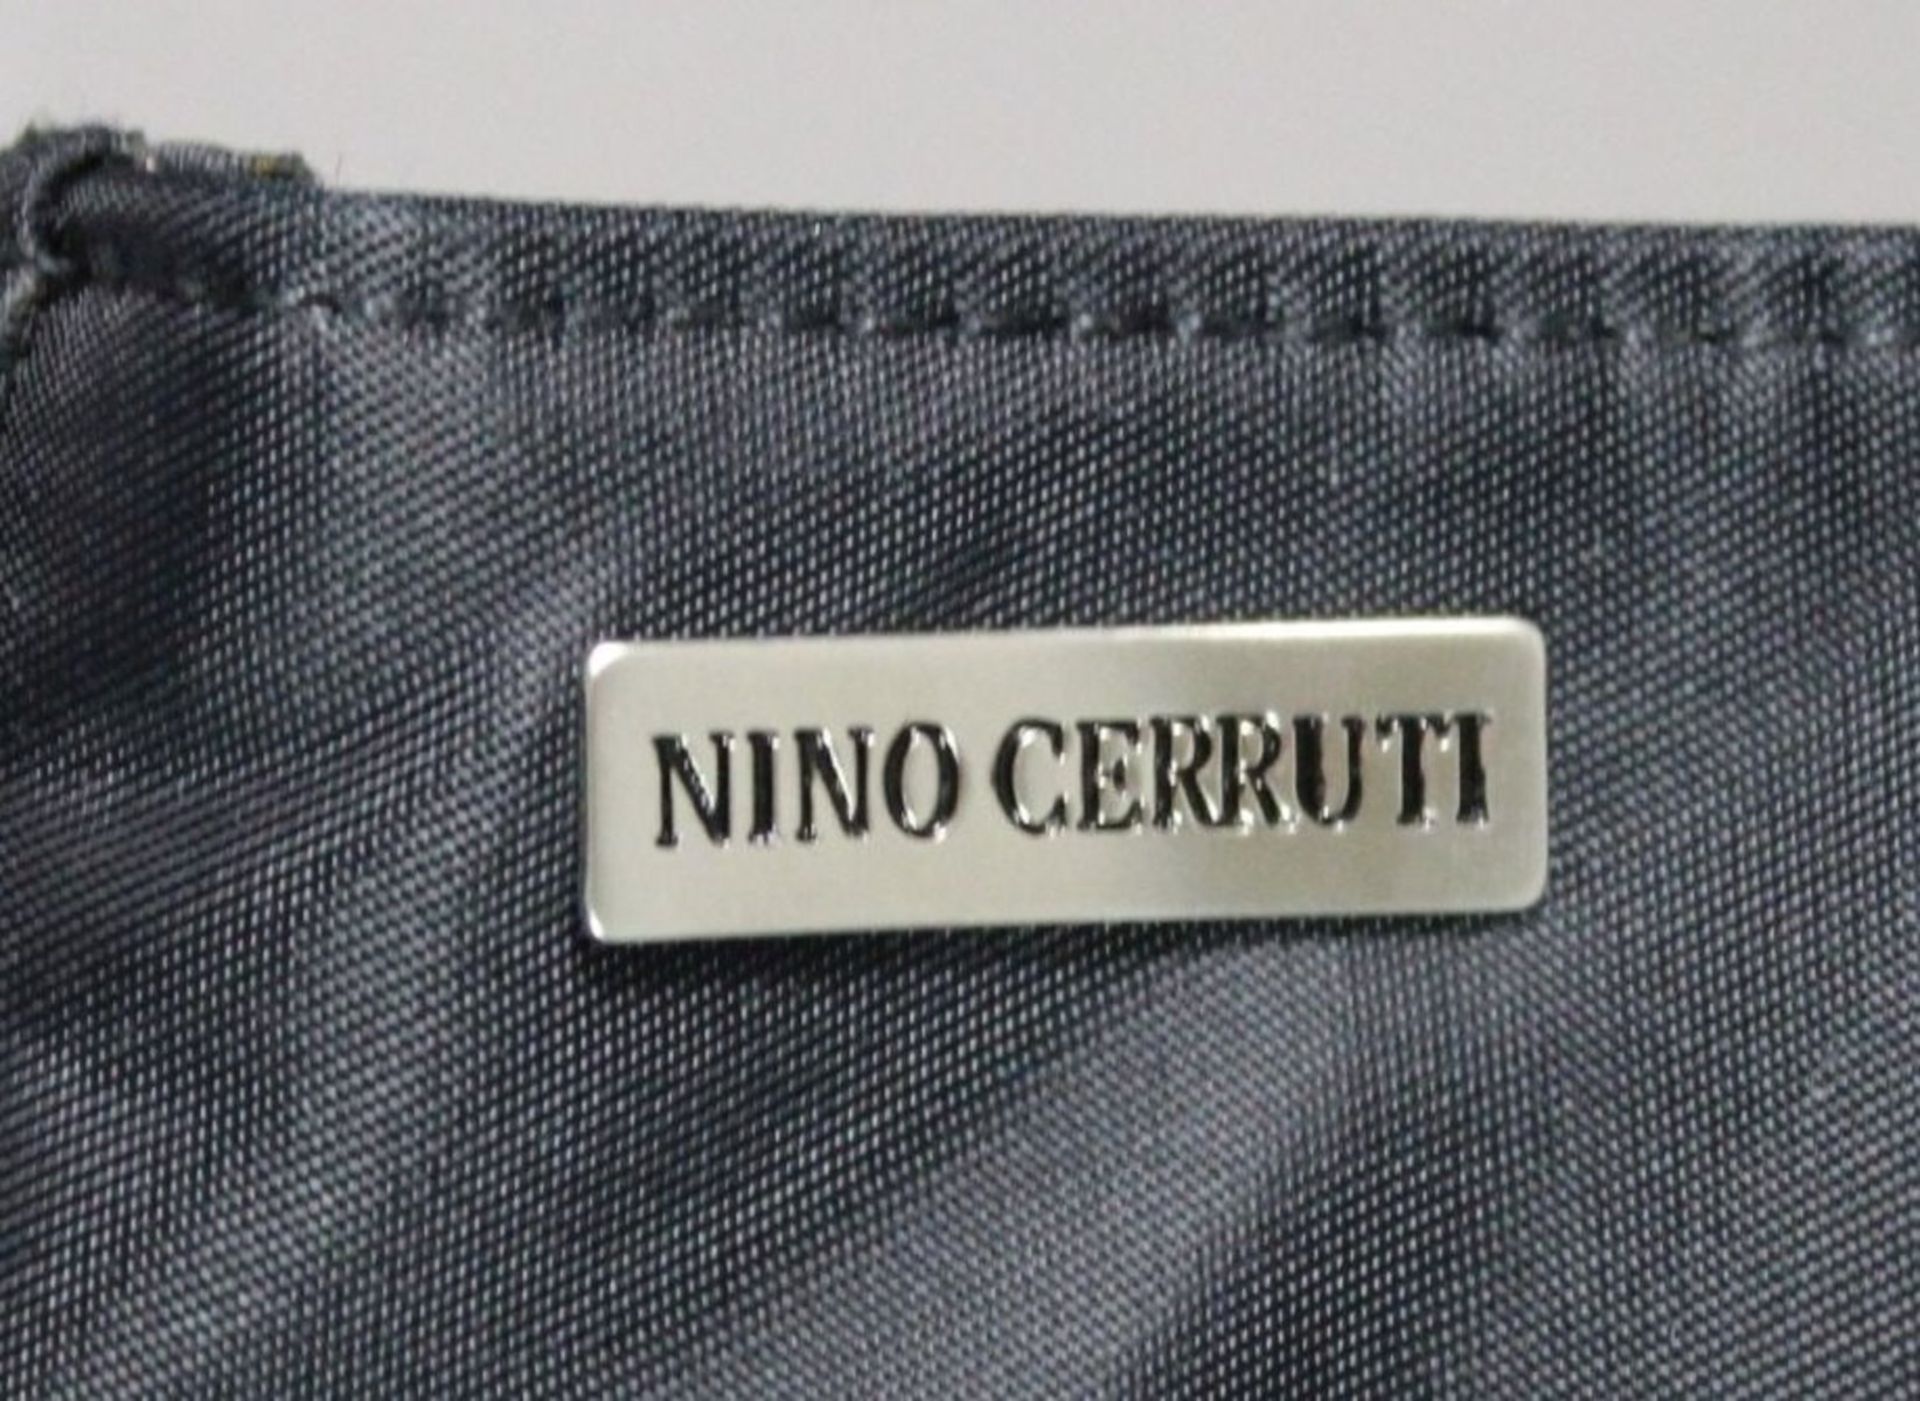 Aktentasche "NINO CERRUTI", neuwertiger Zustand, 36 x 40cm.  - Bild 3 aus 7